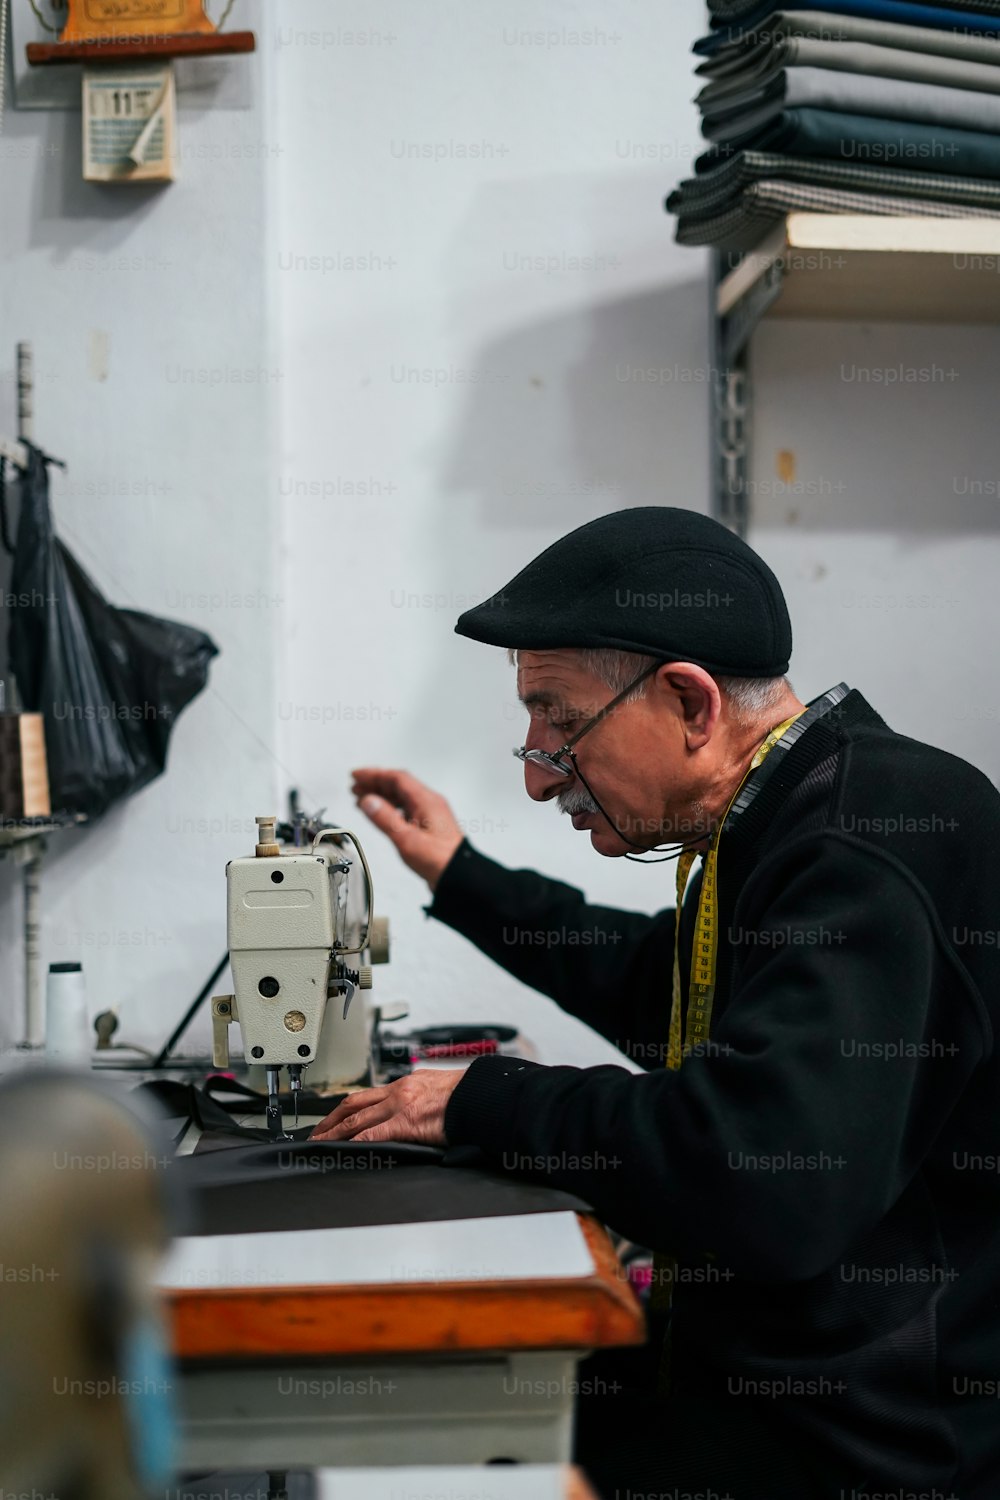 Un anciano está trabajando en una máquina de coser